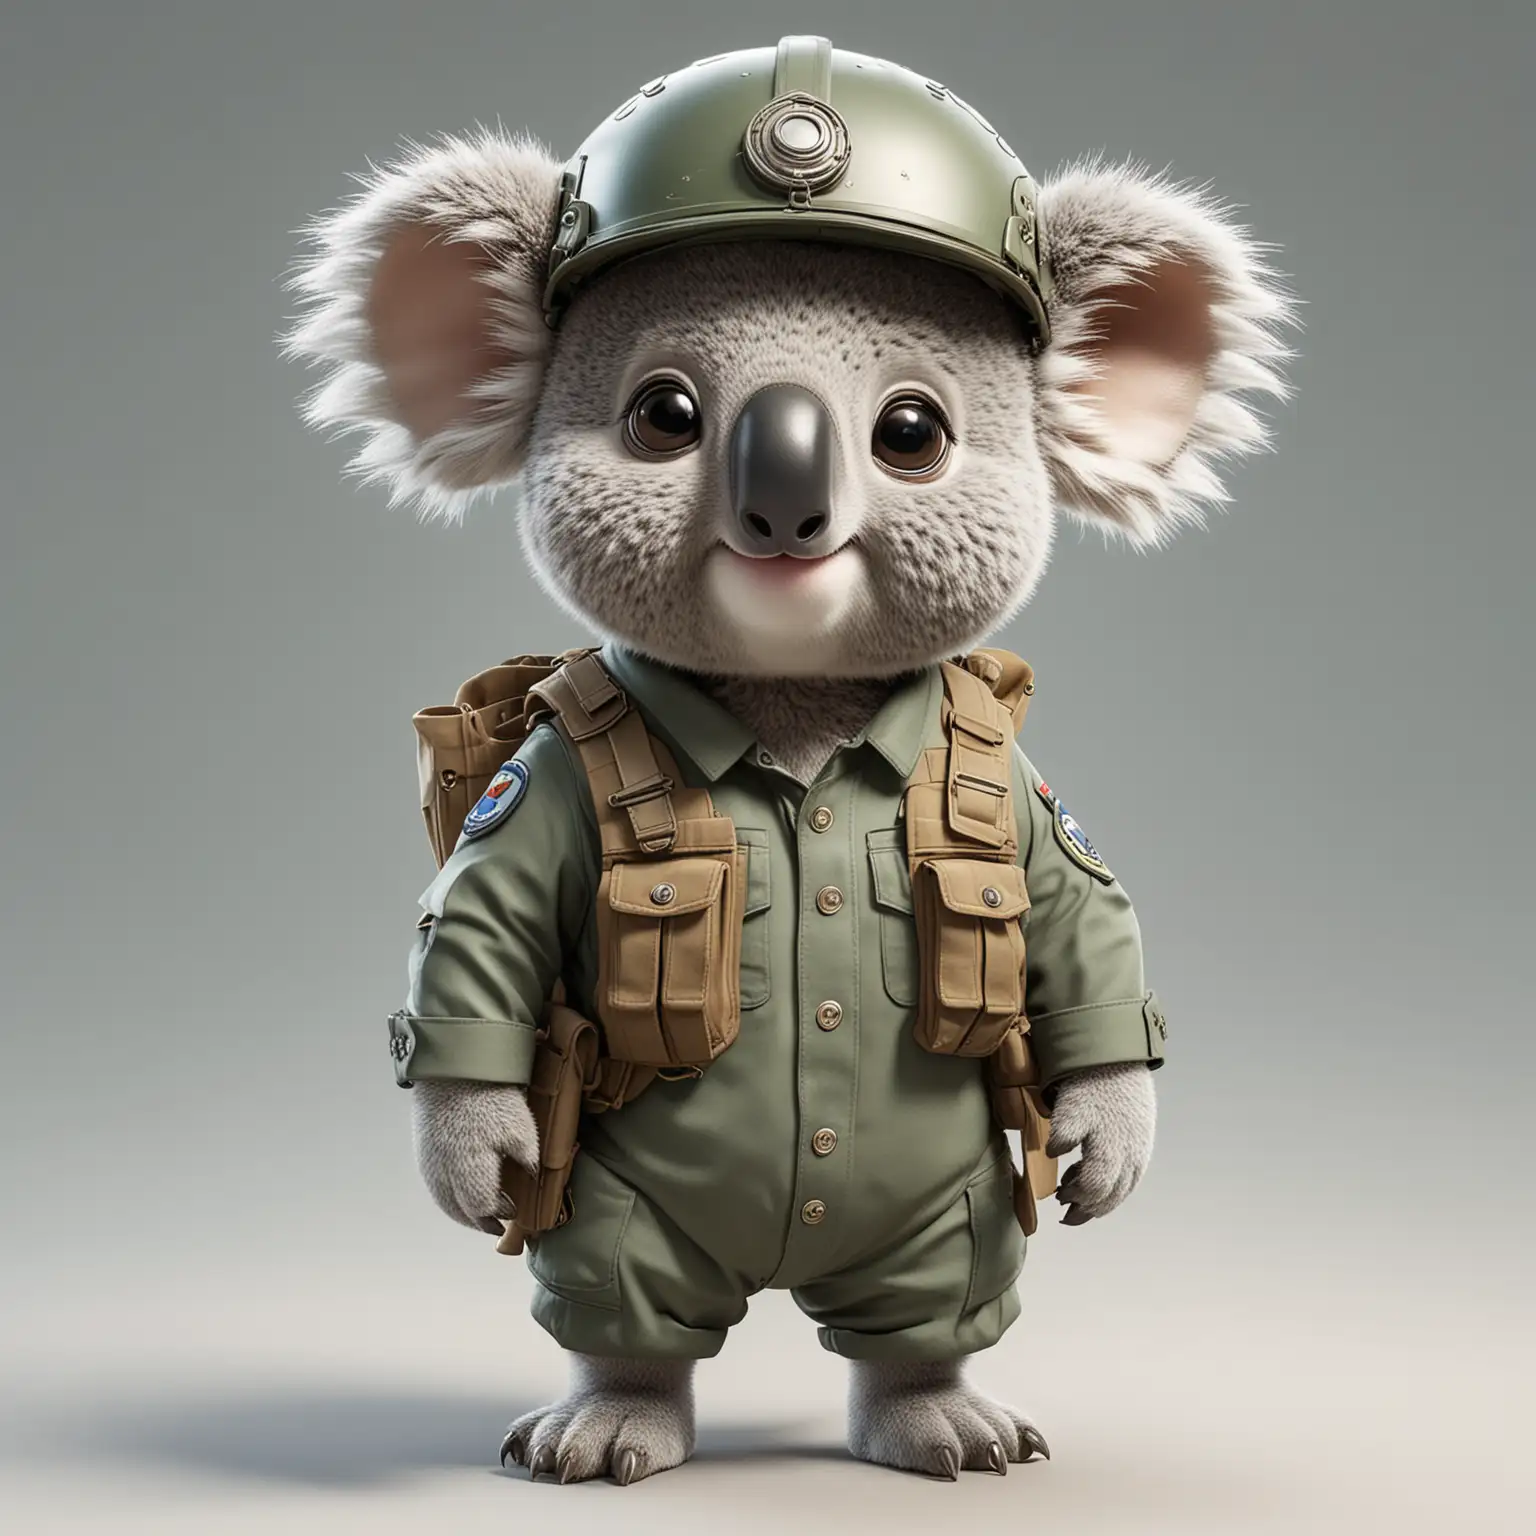 Cheerful Cartoon Koala Soldier in Full Attire